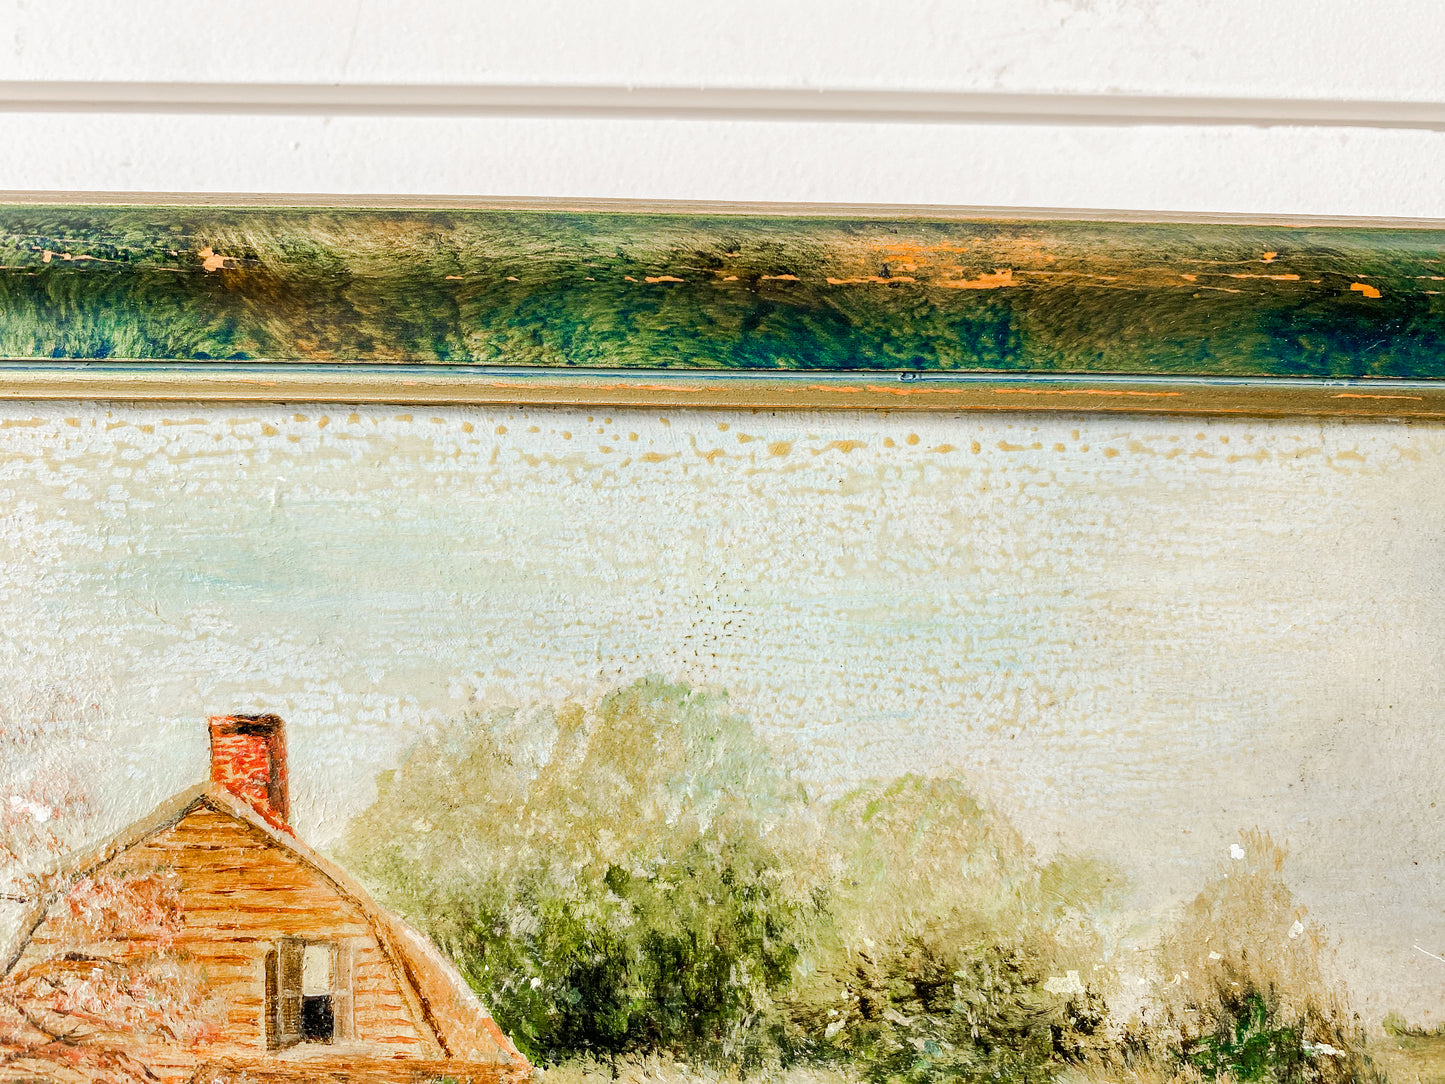 Antique Original Thatched Cottage Landscape Framed Oil Painting in Green Frame